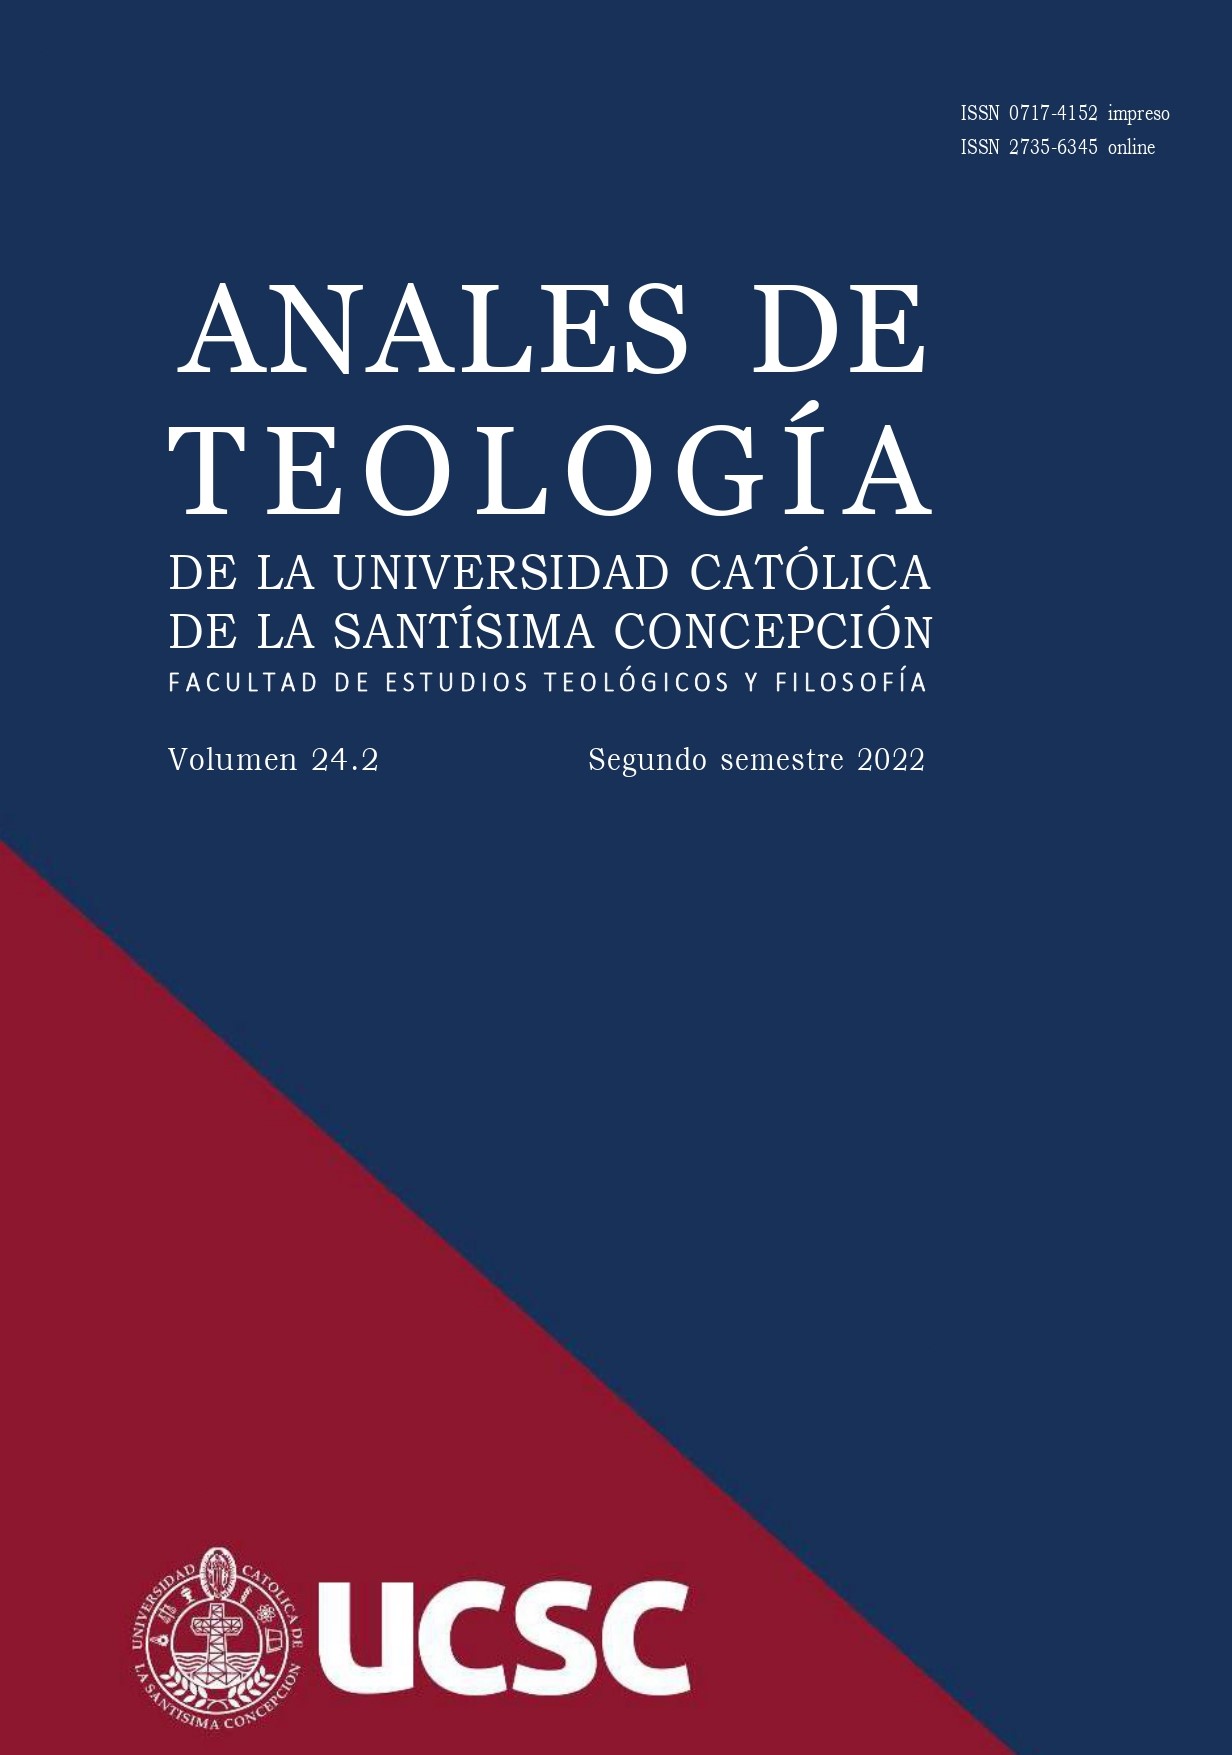 					View Vol. 16 No. 1 (2014): Anales de Teología |January - June 2014
				